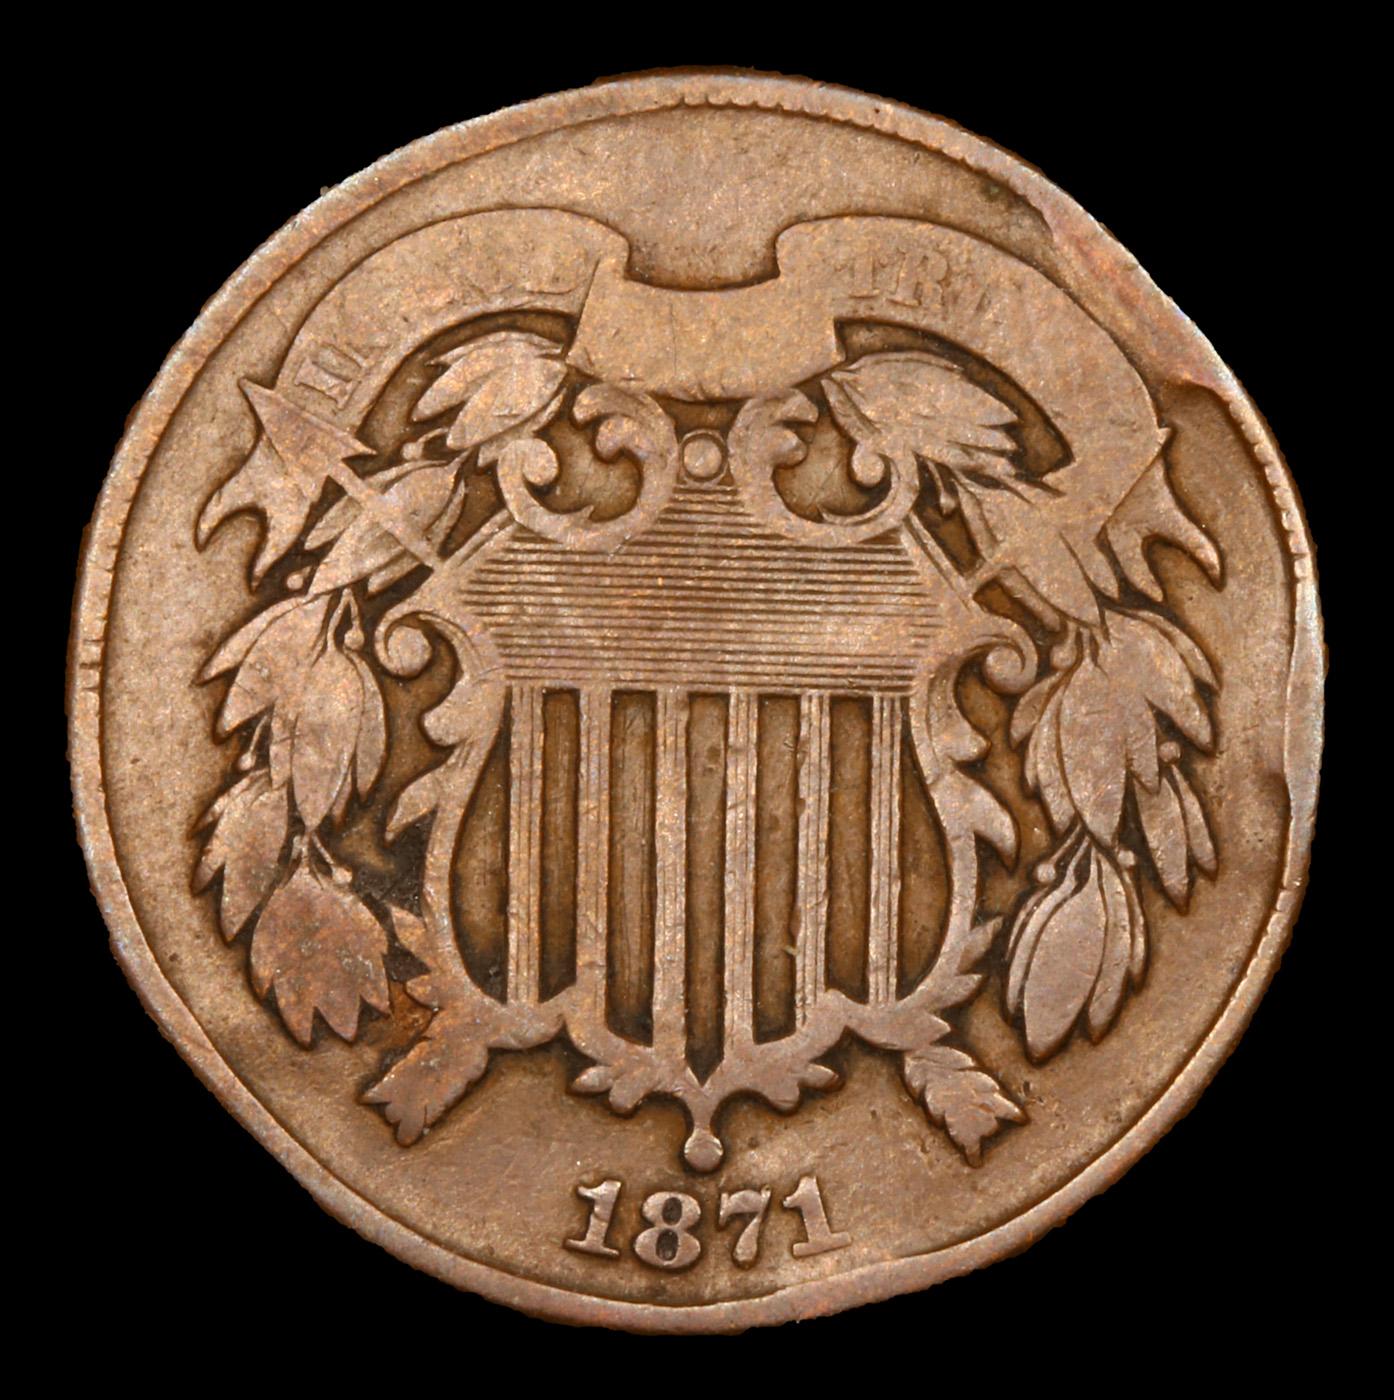 1871 Two Cent Piece 2c Grades vf details